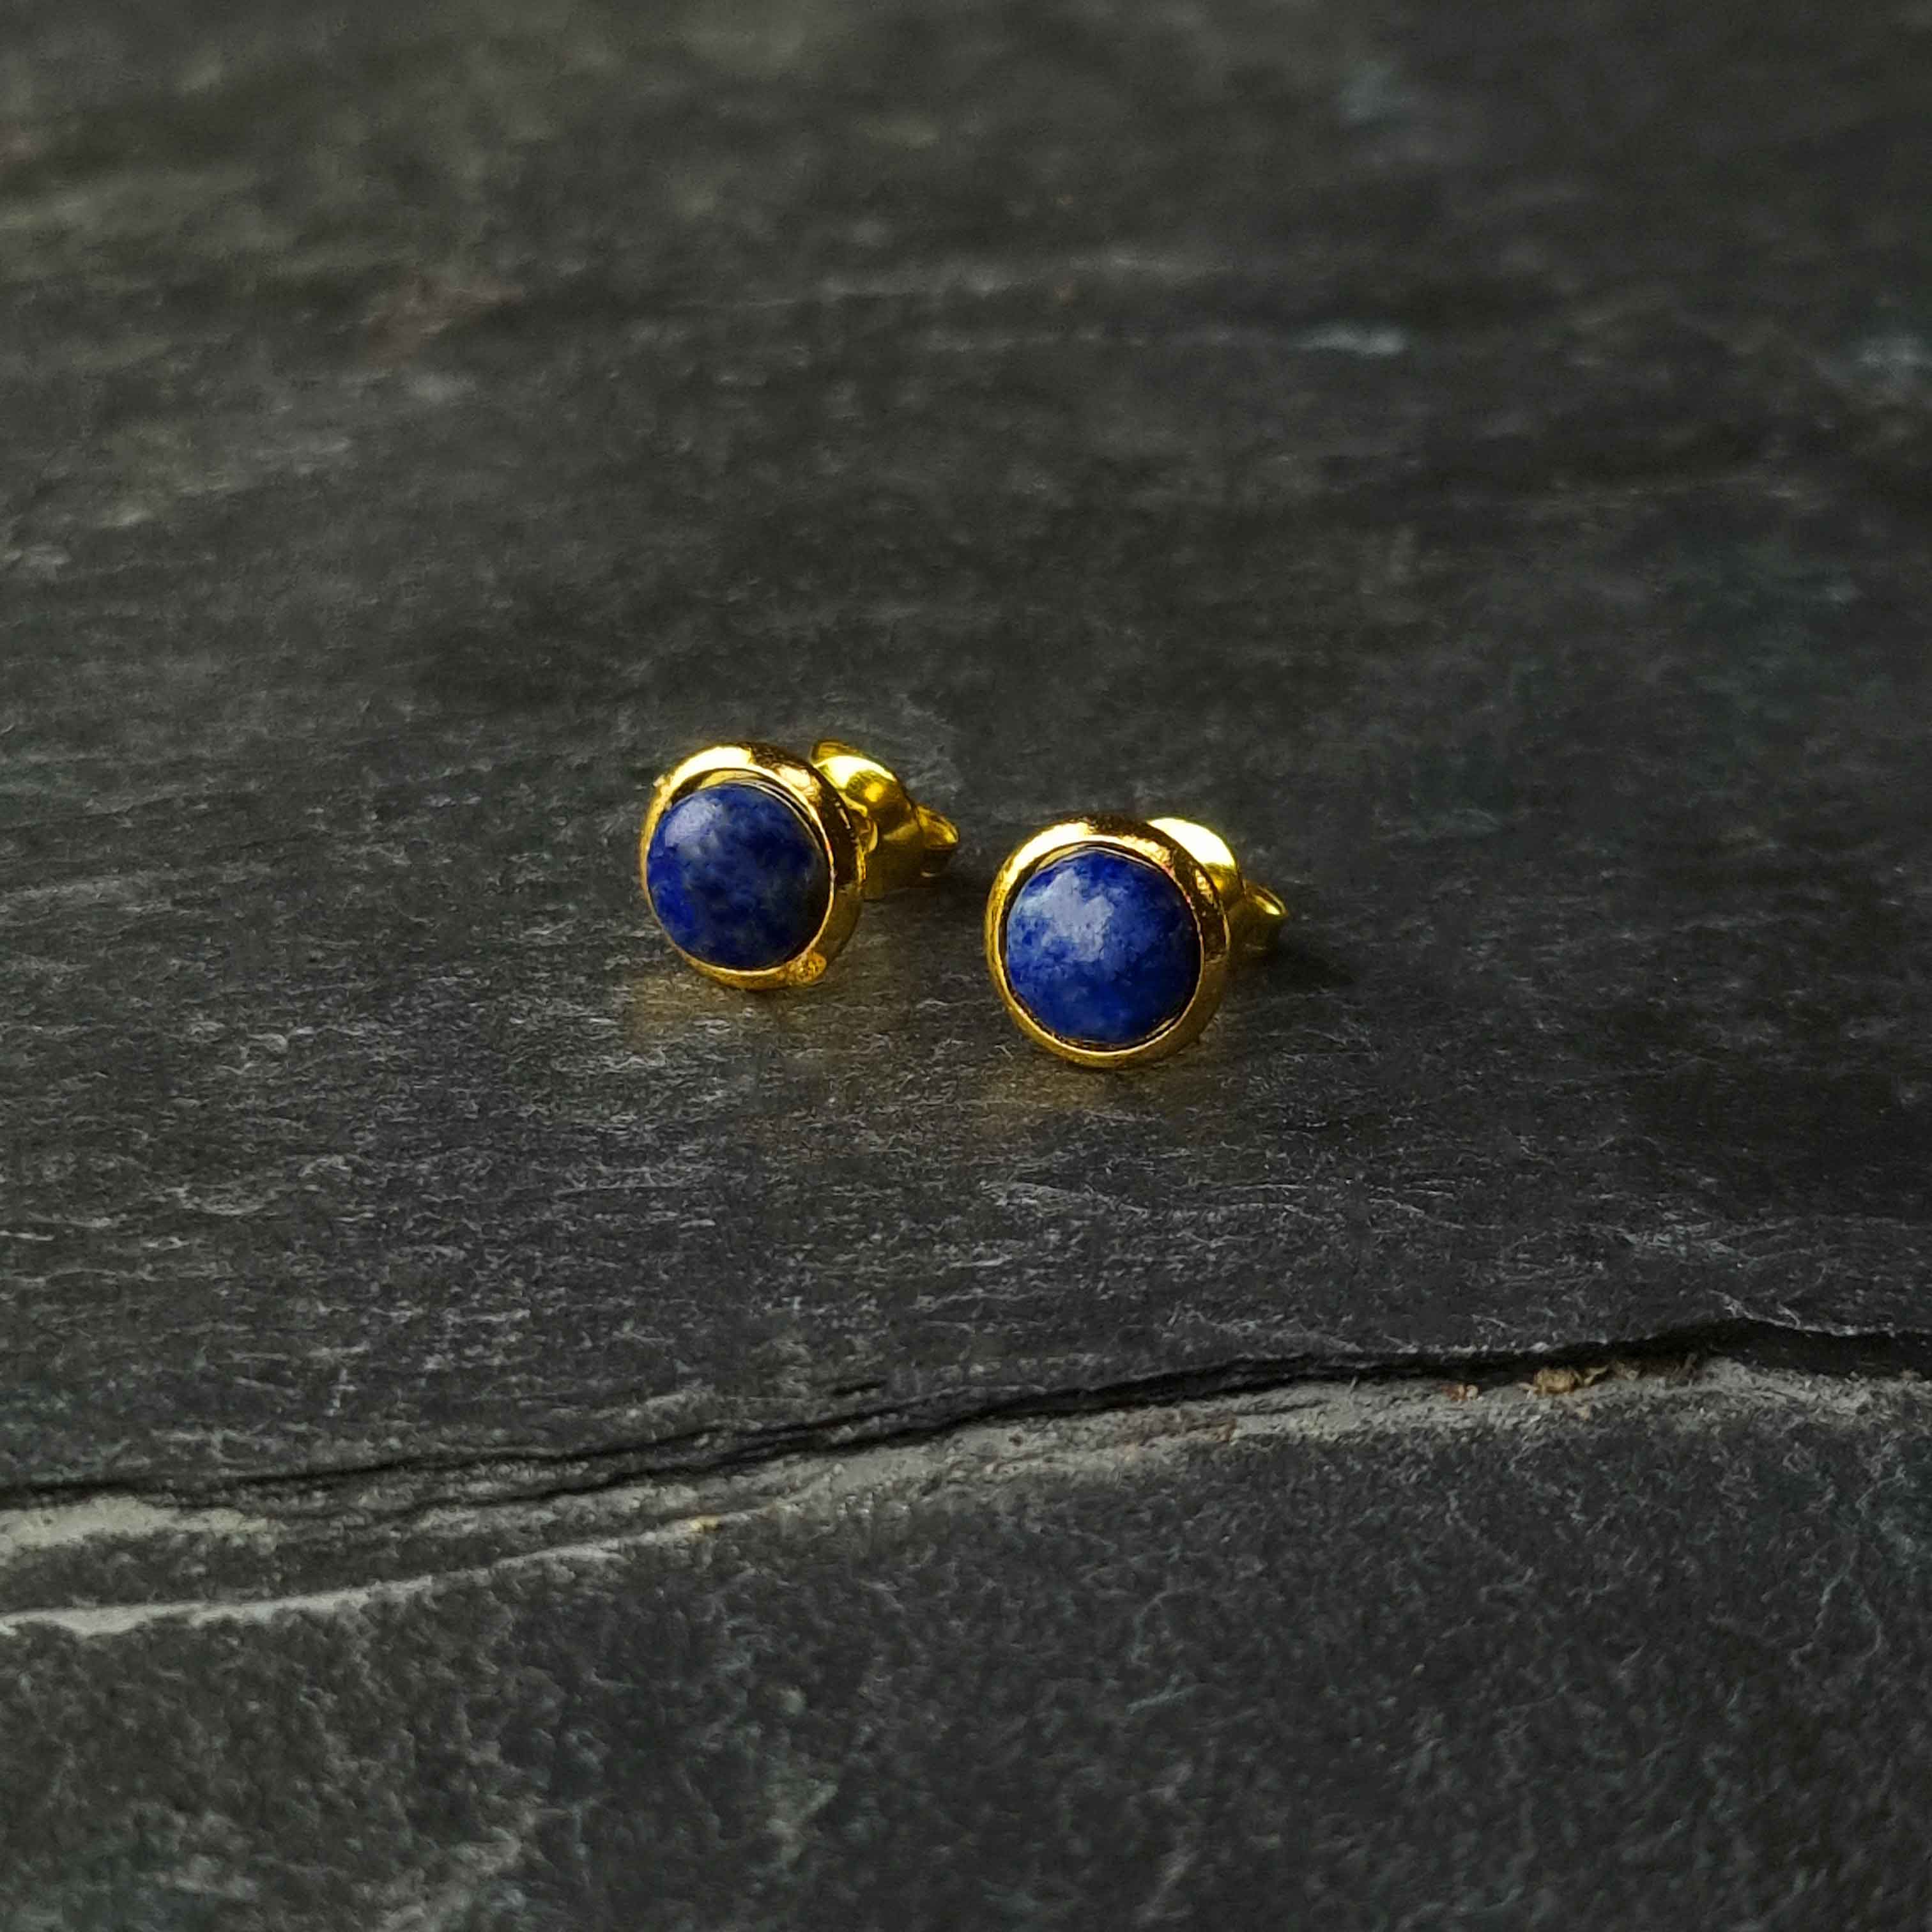 Blauwe edelstenen oorbellen met lapis lazuli, lapis lazuli oorknopjes liggend op leisteen, vooraanzicht